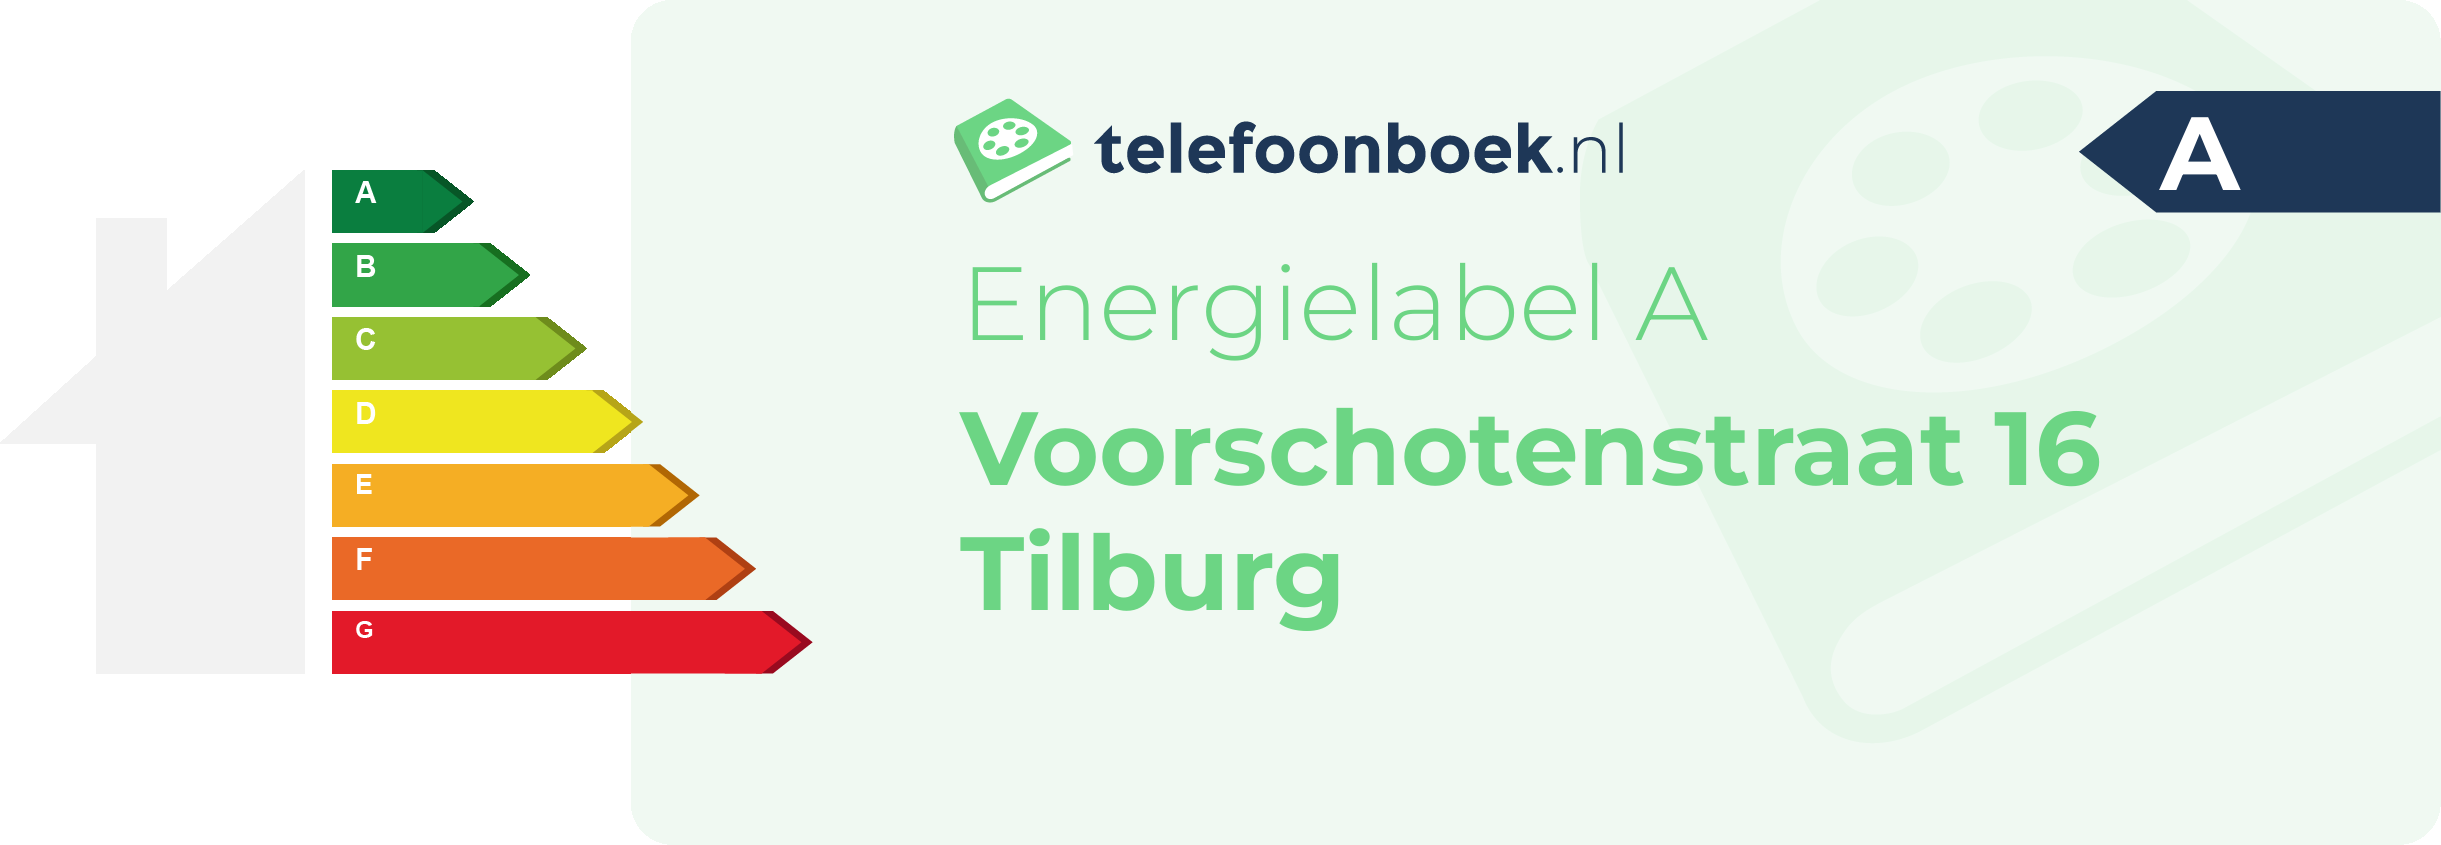 Energielabel Voorschotenstraat 16 Tilburg